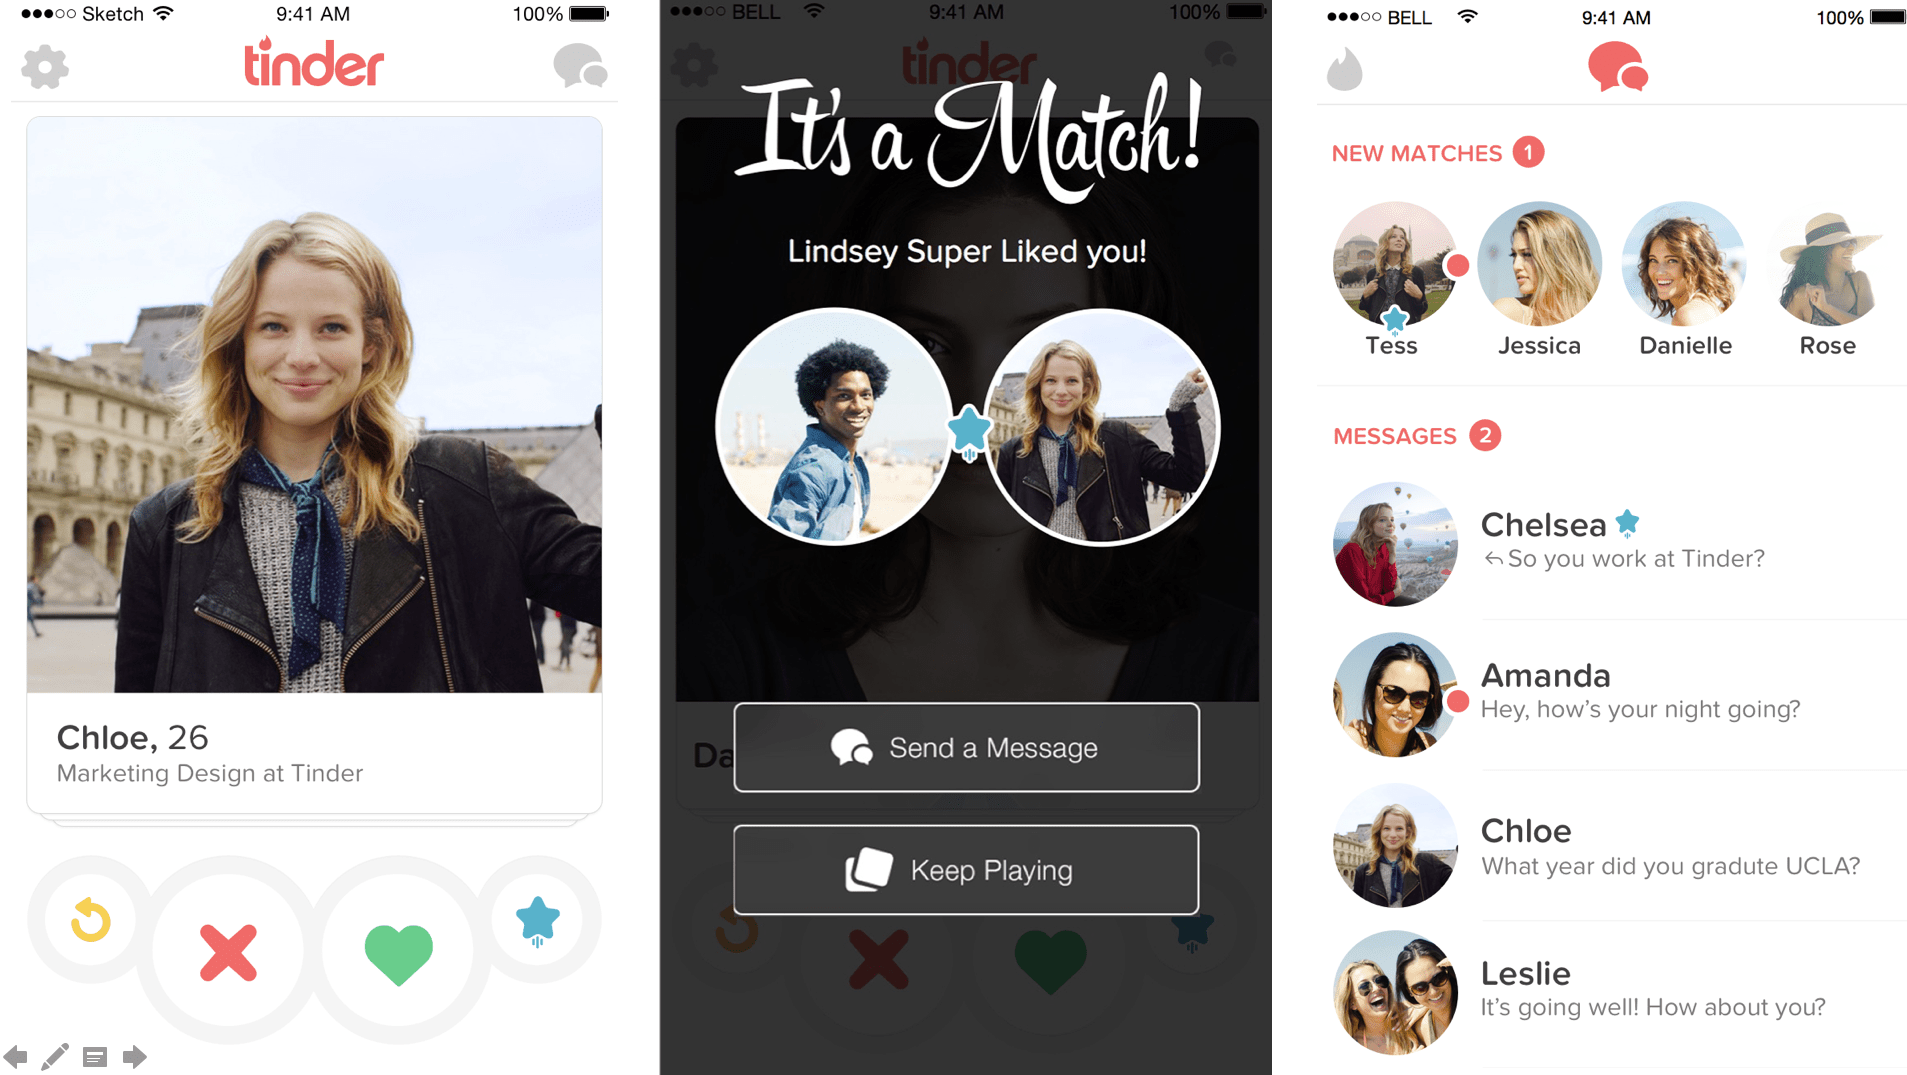 Verheiratete dating-apps für android